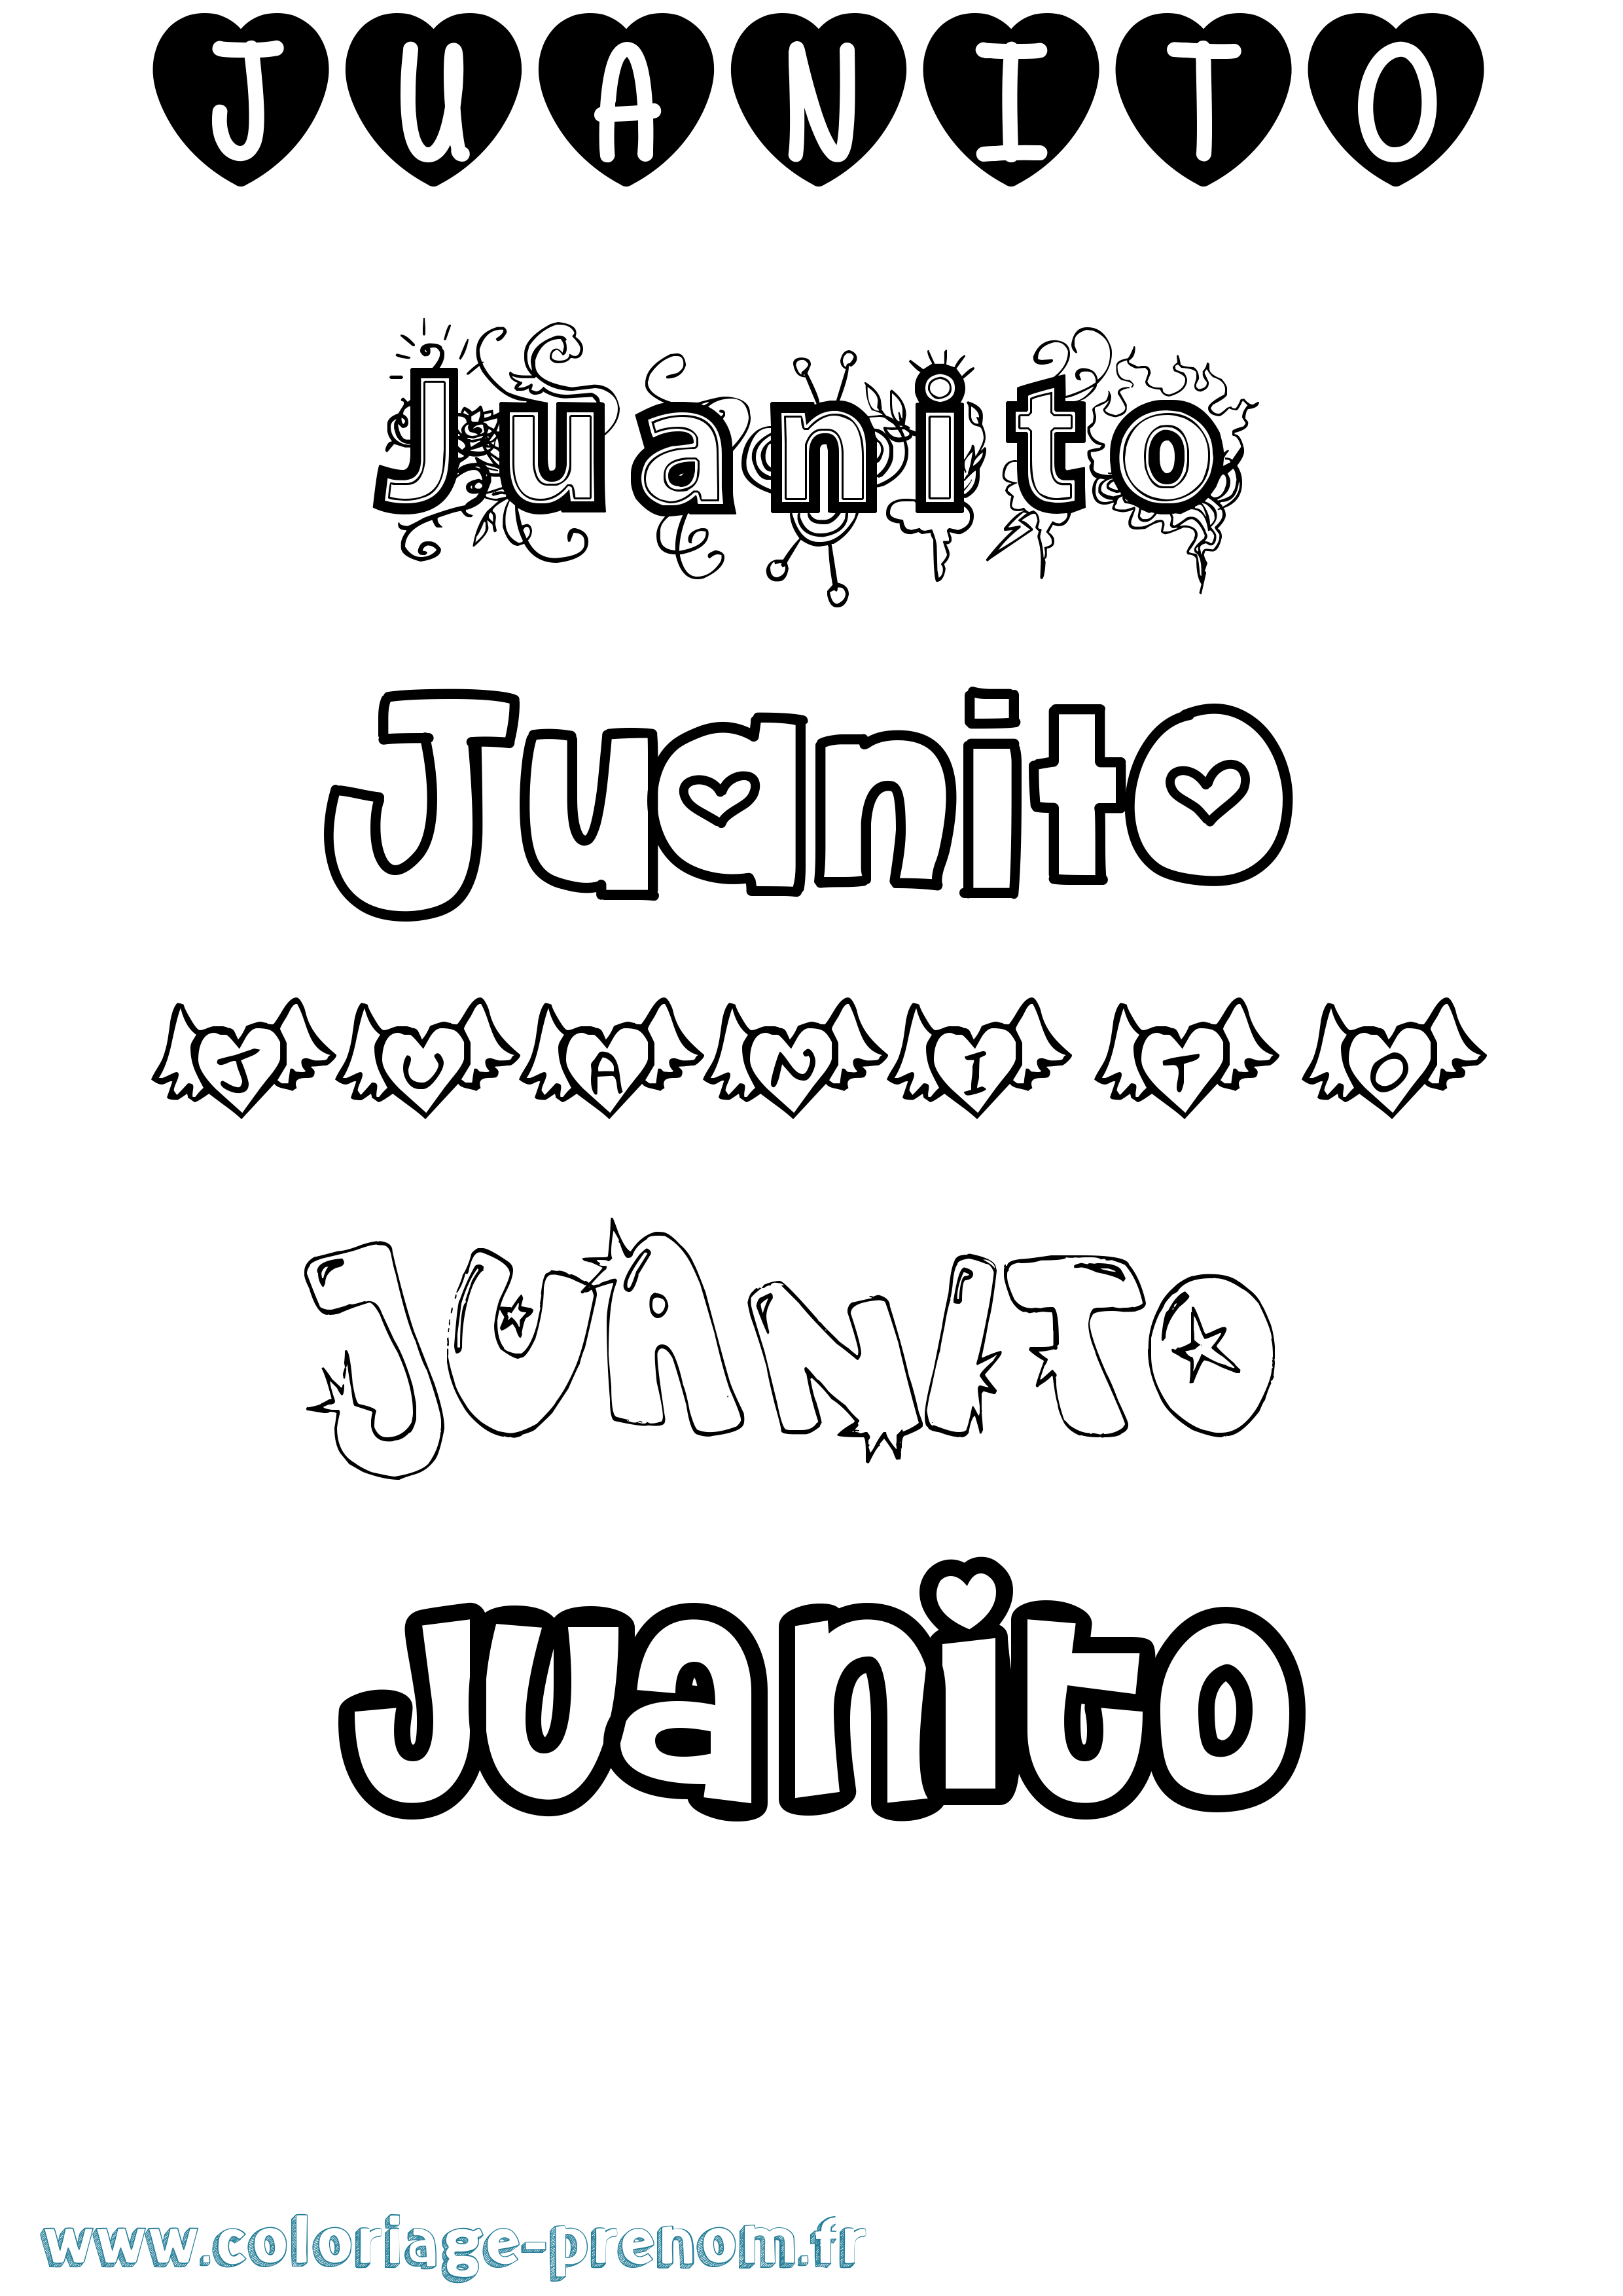 Coloriage prénom Juanito Girly